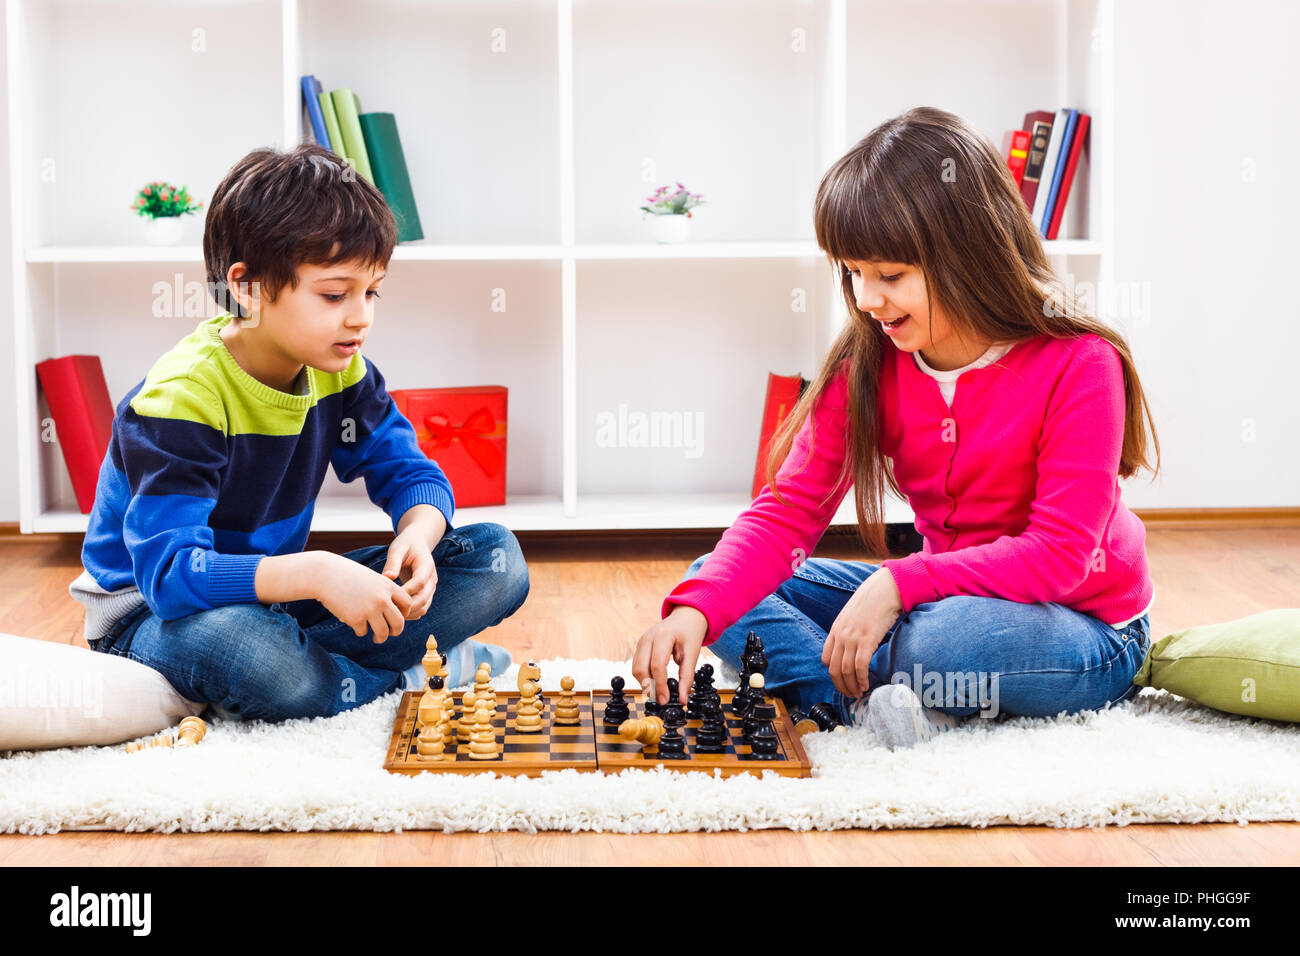 Enfants jouant aux échecs Banque D'Images